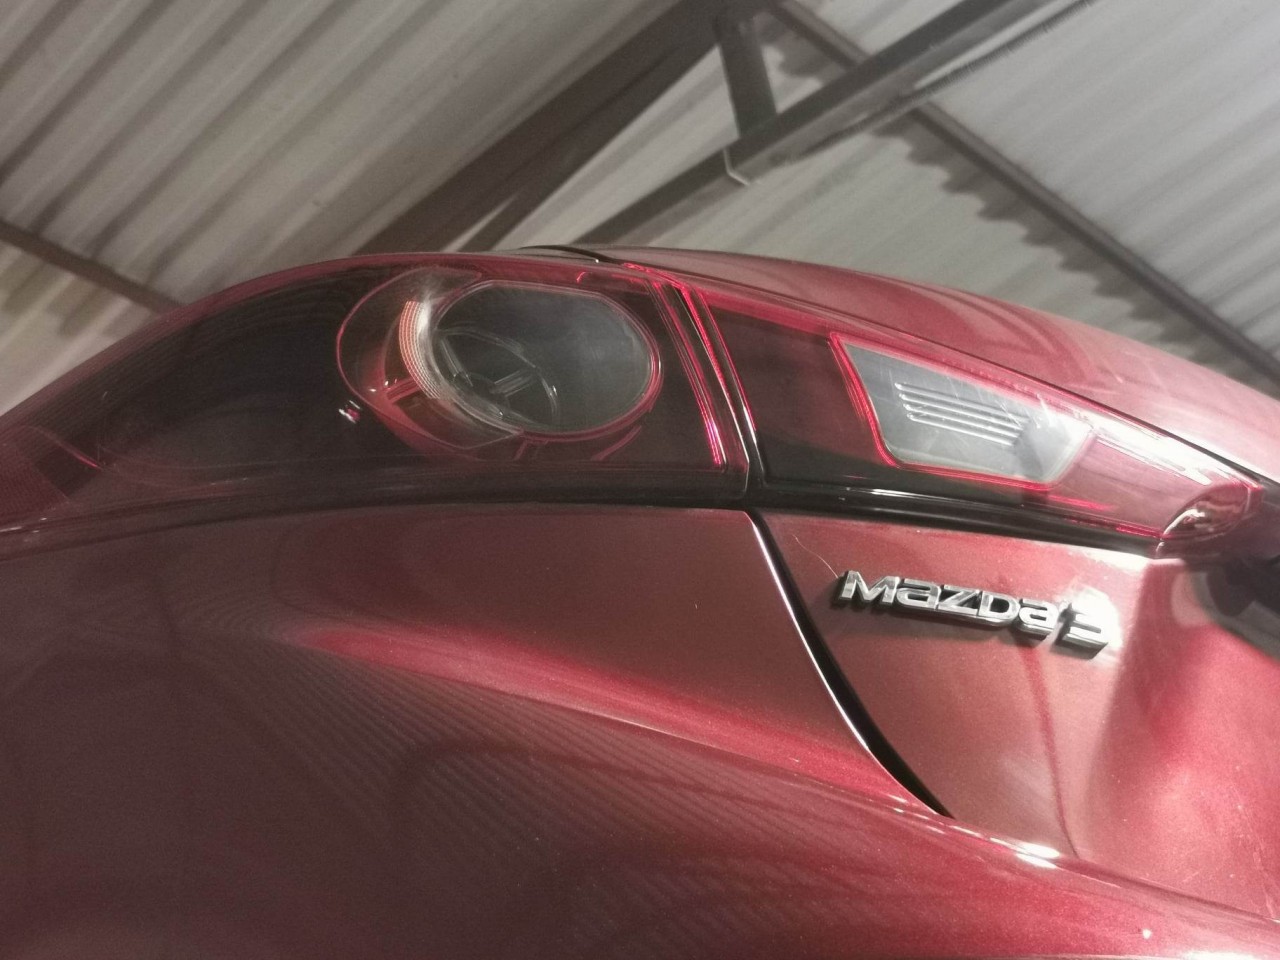 Bất ngờ tìm lại chiếc Mazda 3 sau hơn hai năm bị đánh cắp